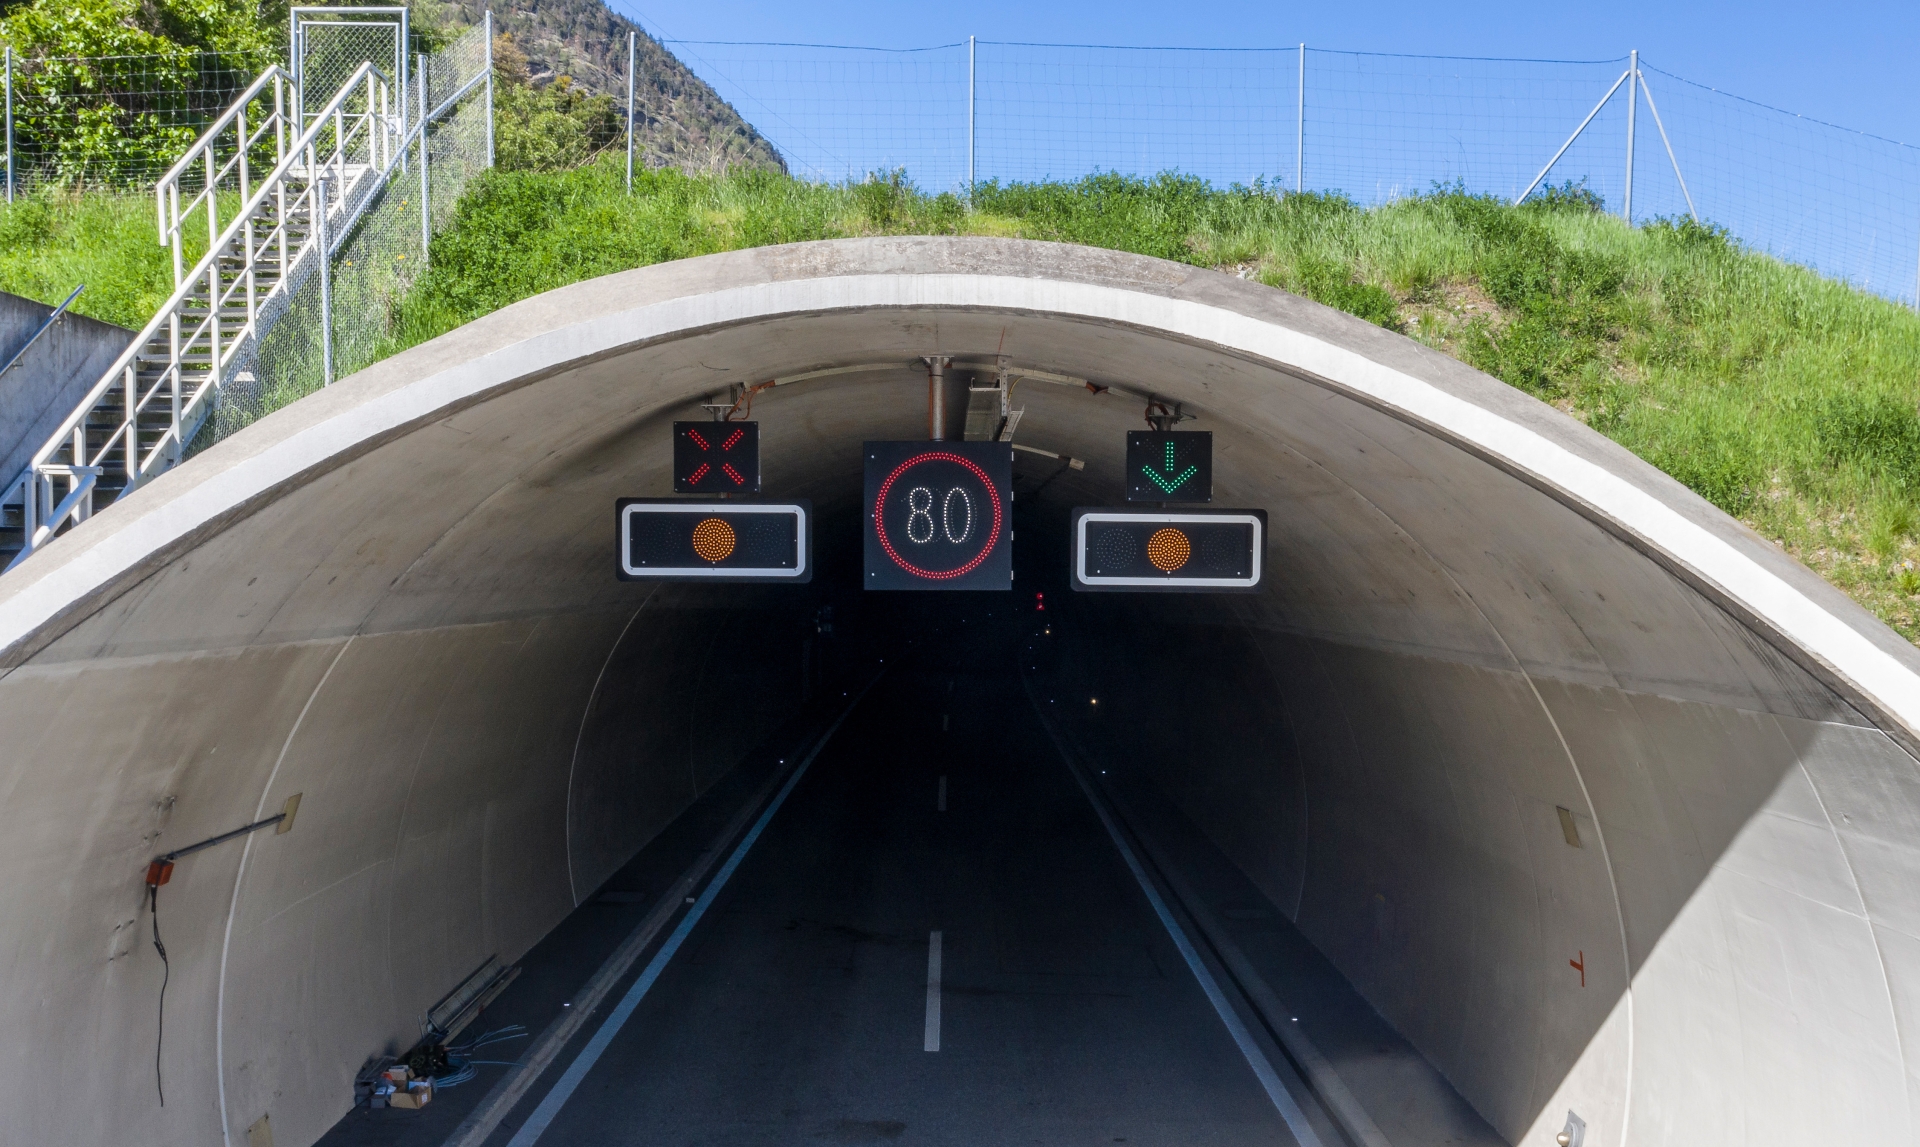 Le tunnel de Gamsen restera fermé au trafic durant trois nuits, du 27 au 30 septembre prochains.